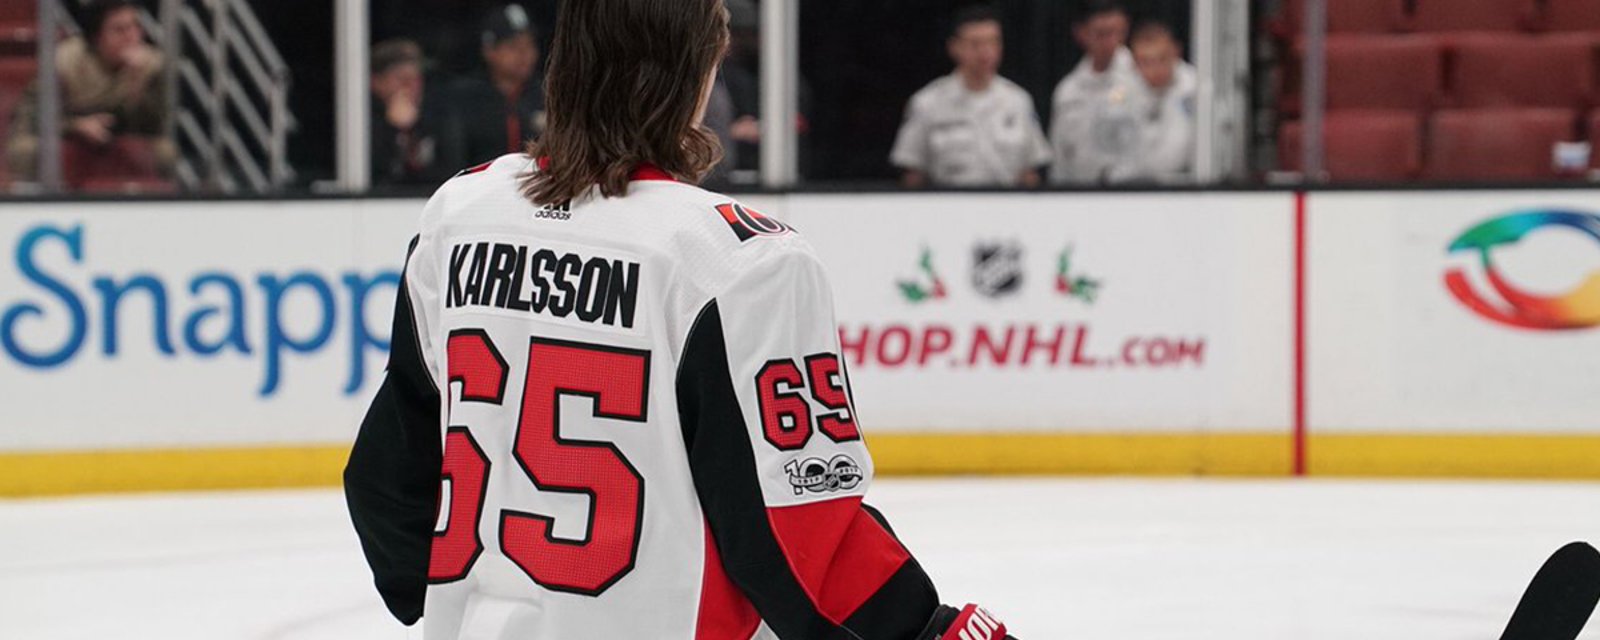 Report: Karlsson breaks silence on trade rumors